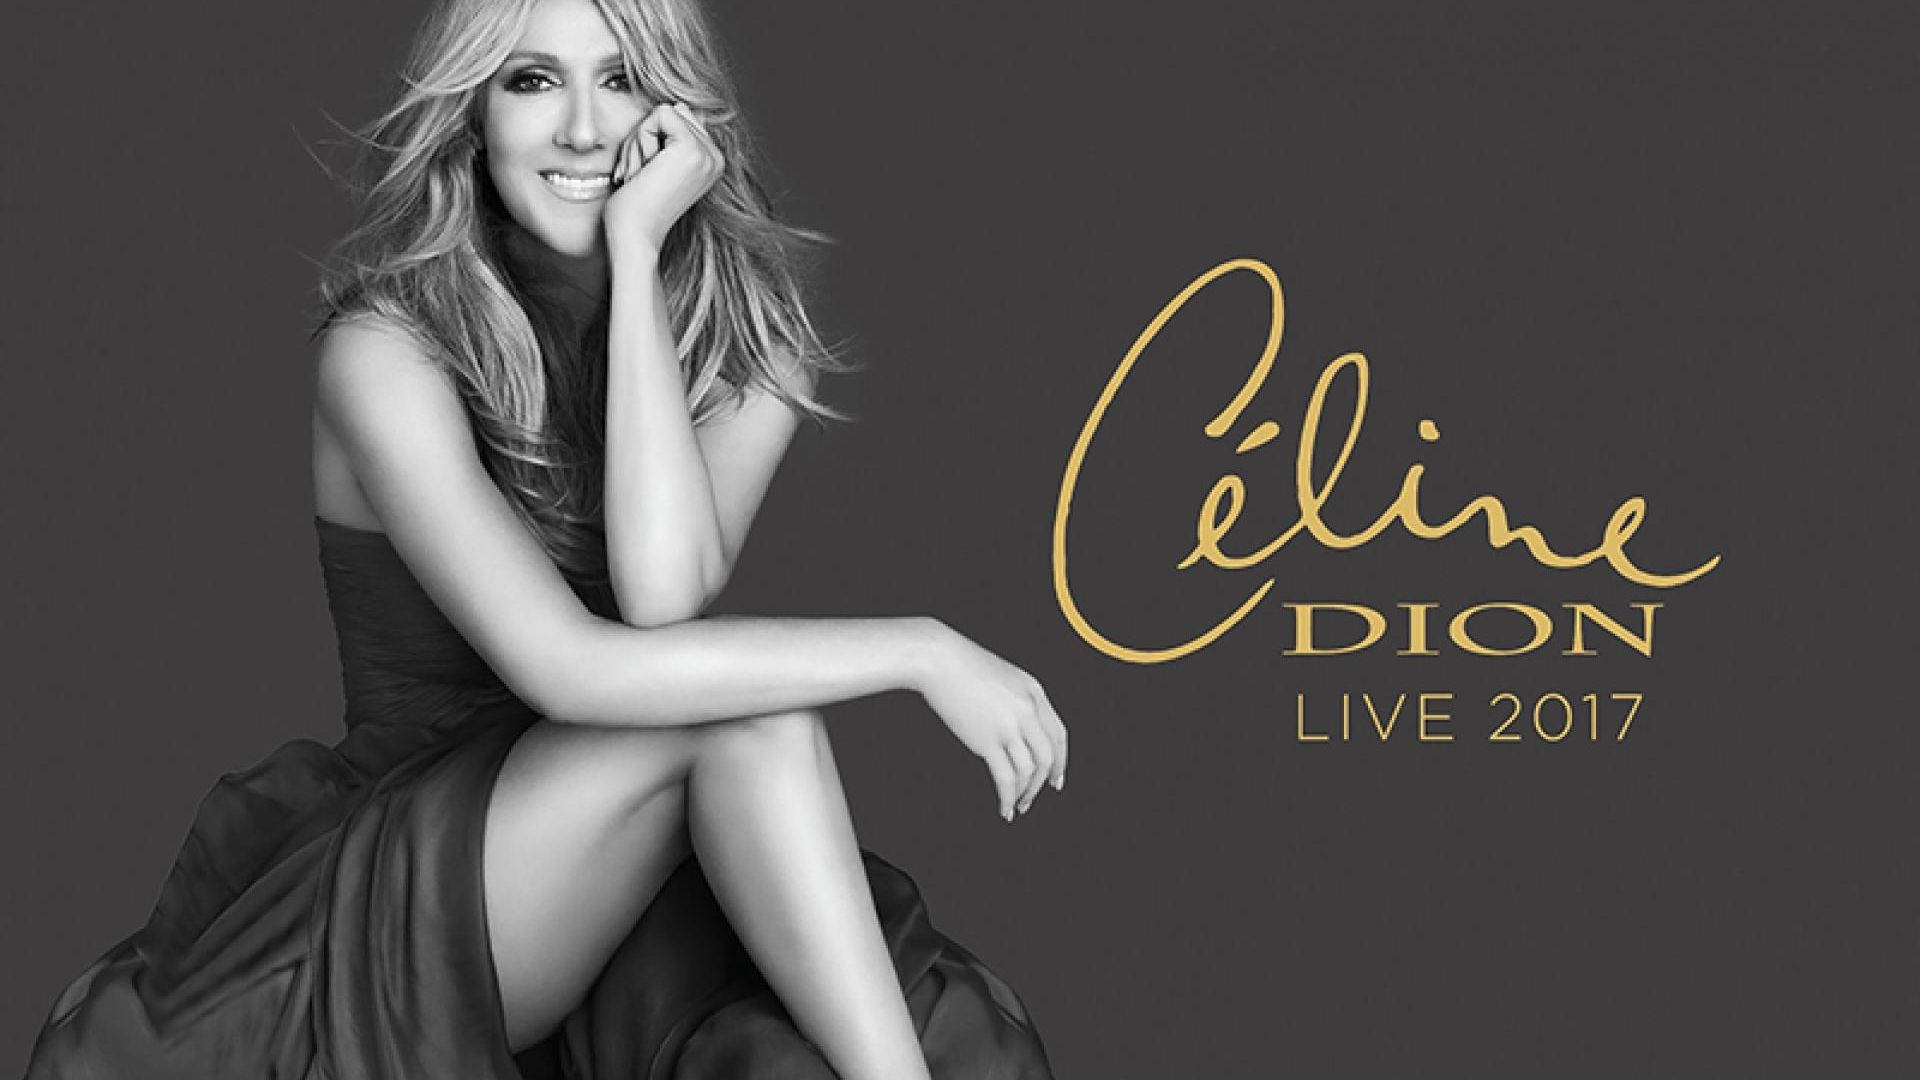 Celine Dion Live 2017